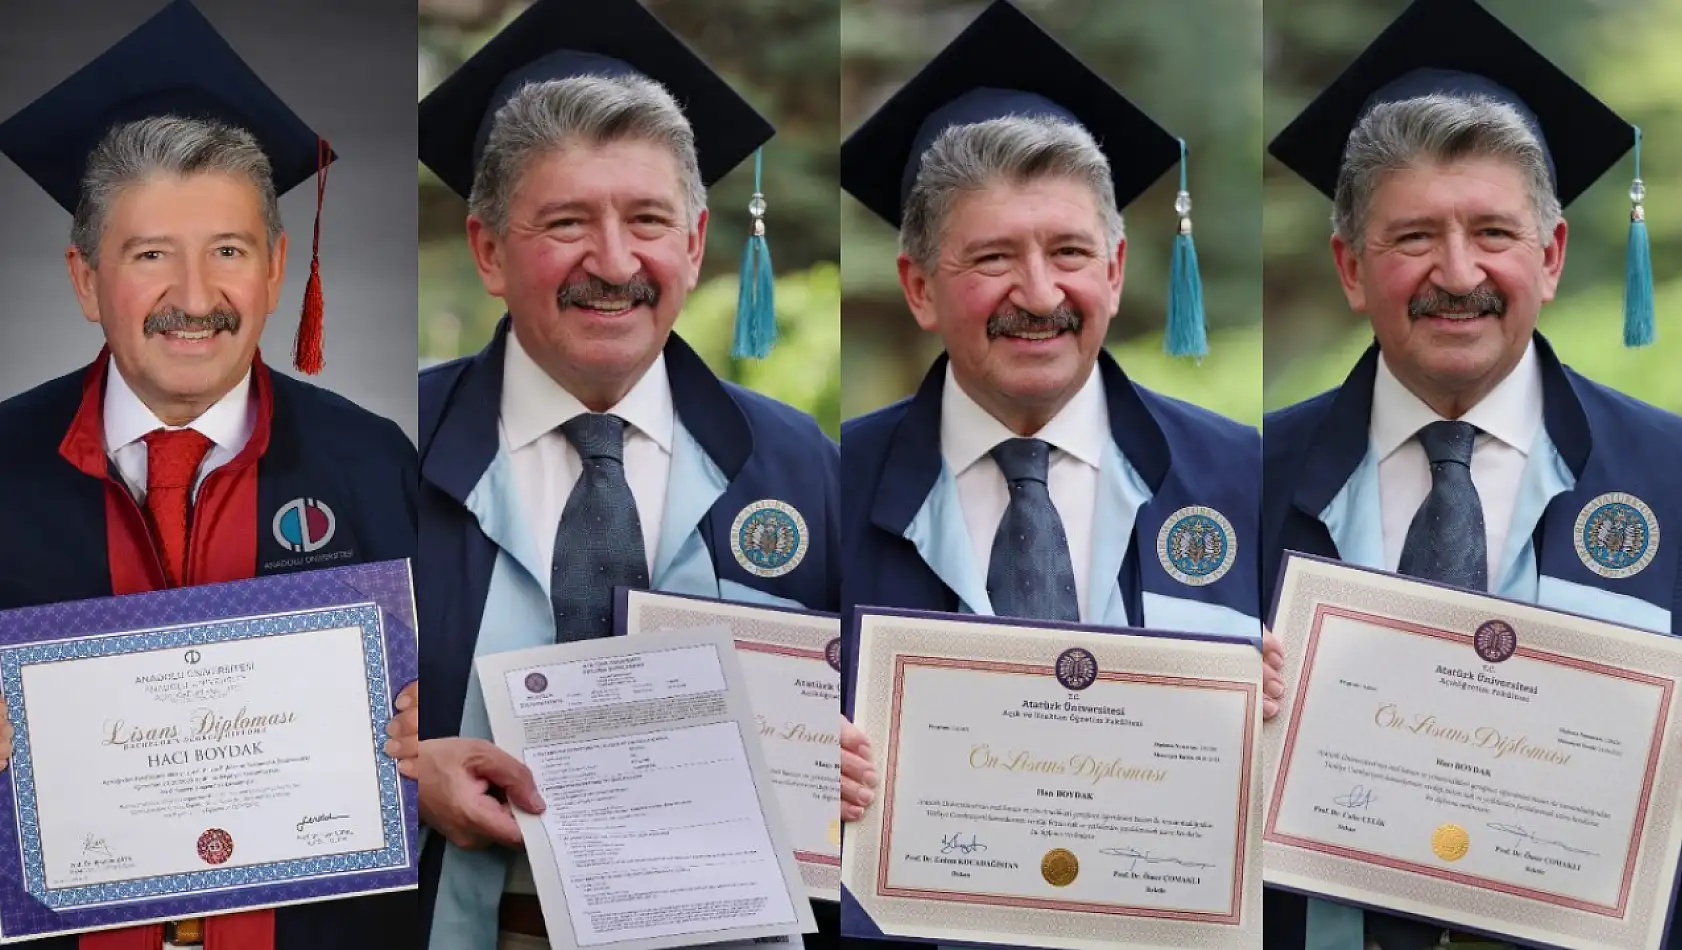 FETÖ'den ceza alan Hacı Boydak 5 üniversite bitirdi! Her diplomasıyla ayrı ayrı poz verdi